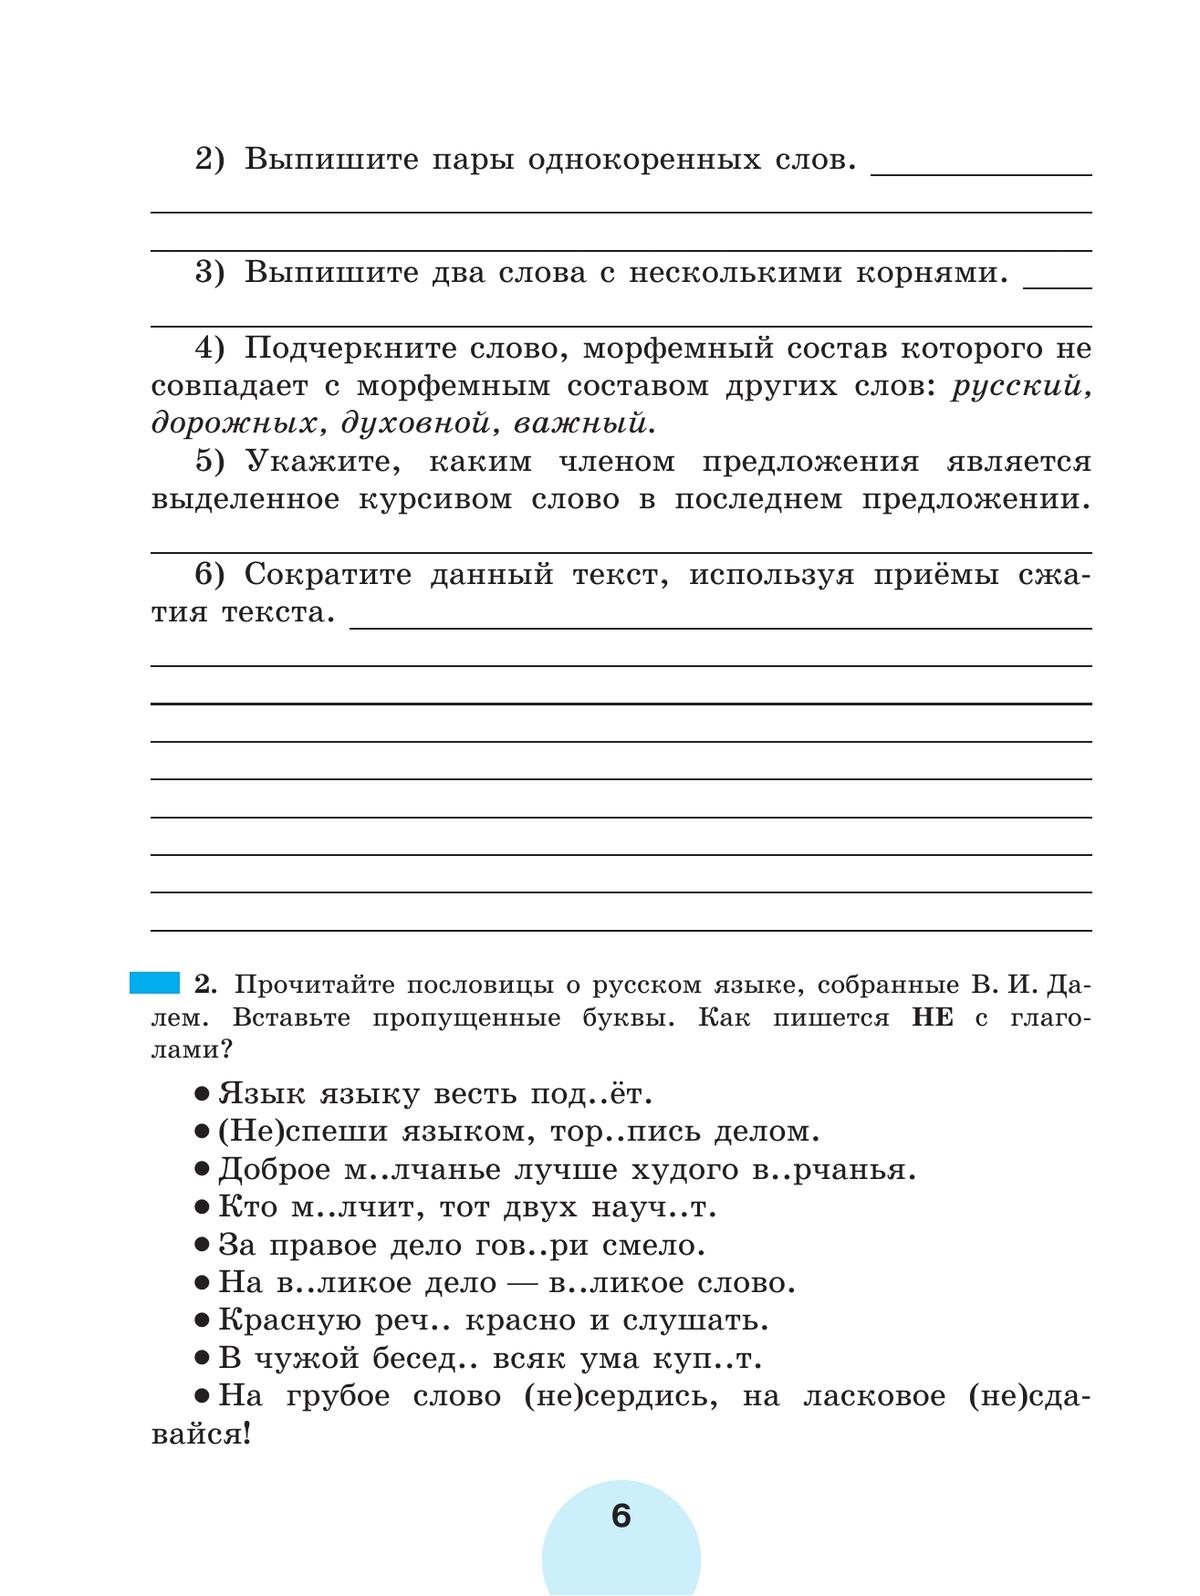 Русский язык. Рабочая тетрадь. 6 класс. В 2 ч. Часть 1 3